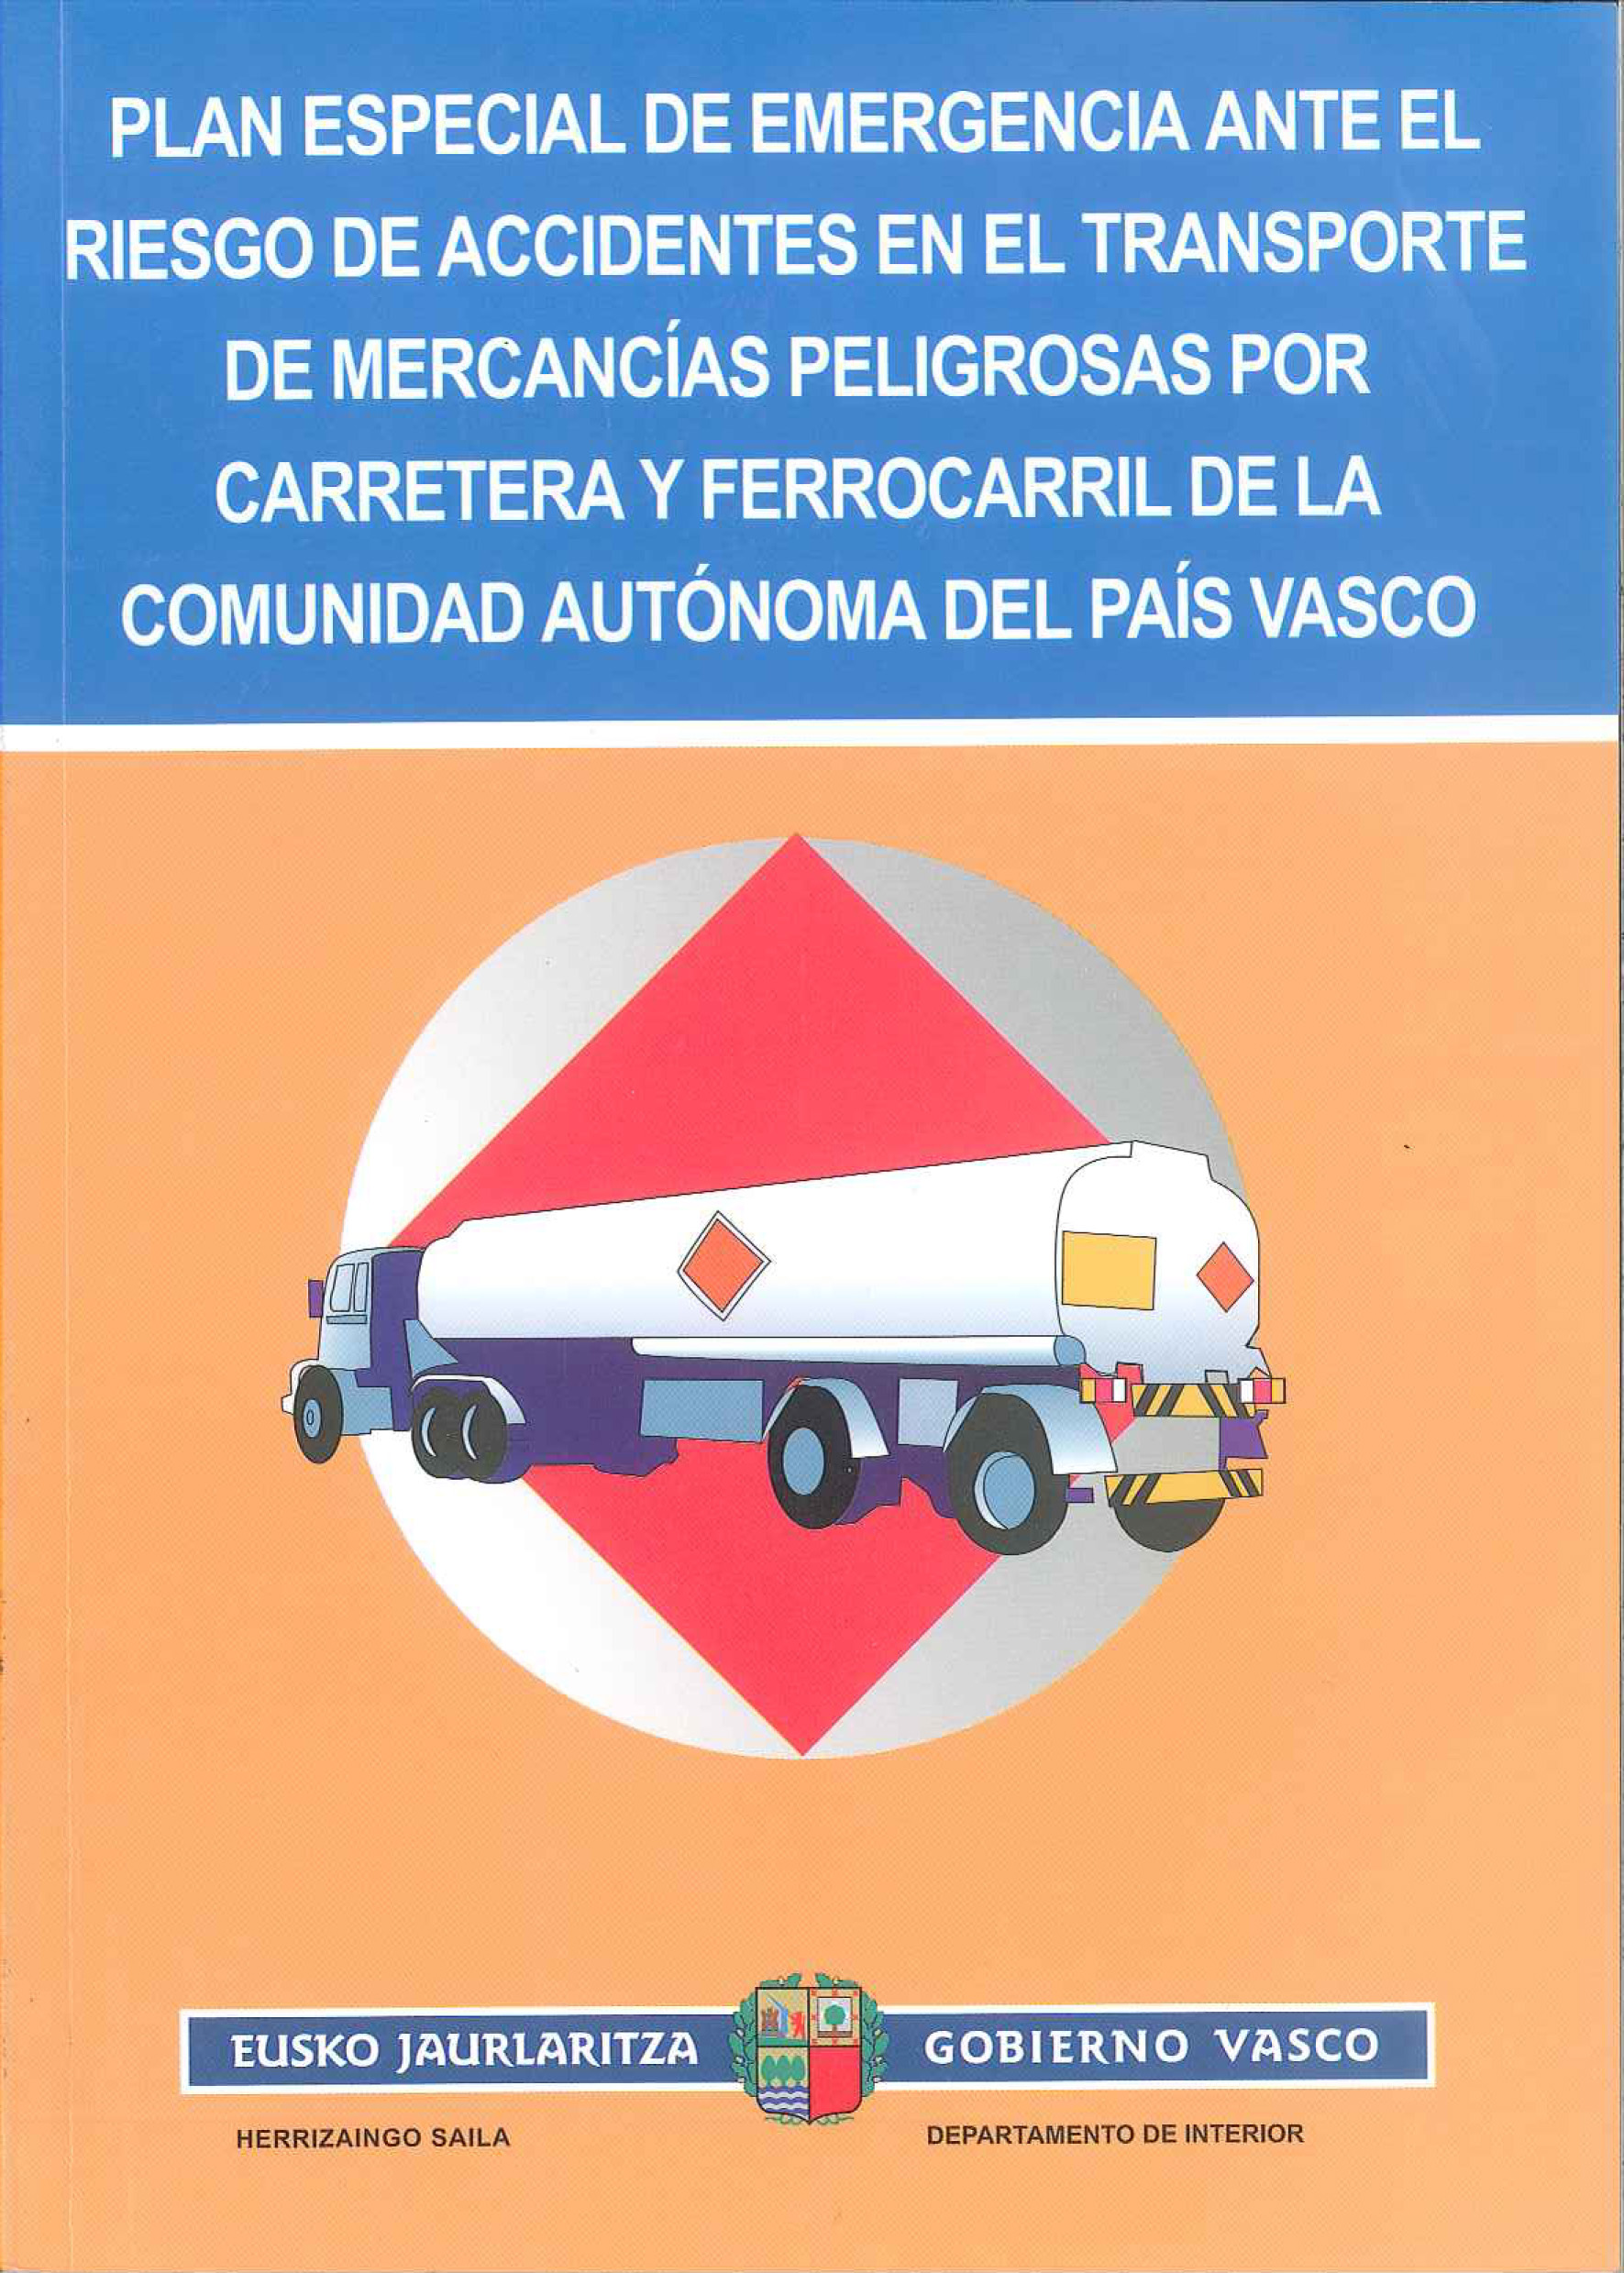 Plan Especial de Emergencia ante el Riesgo de Accidentes en el Transporte de Mercancías Peligrosas por Carretera y Ferrocarril